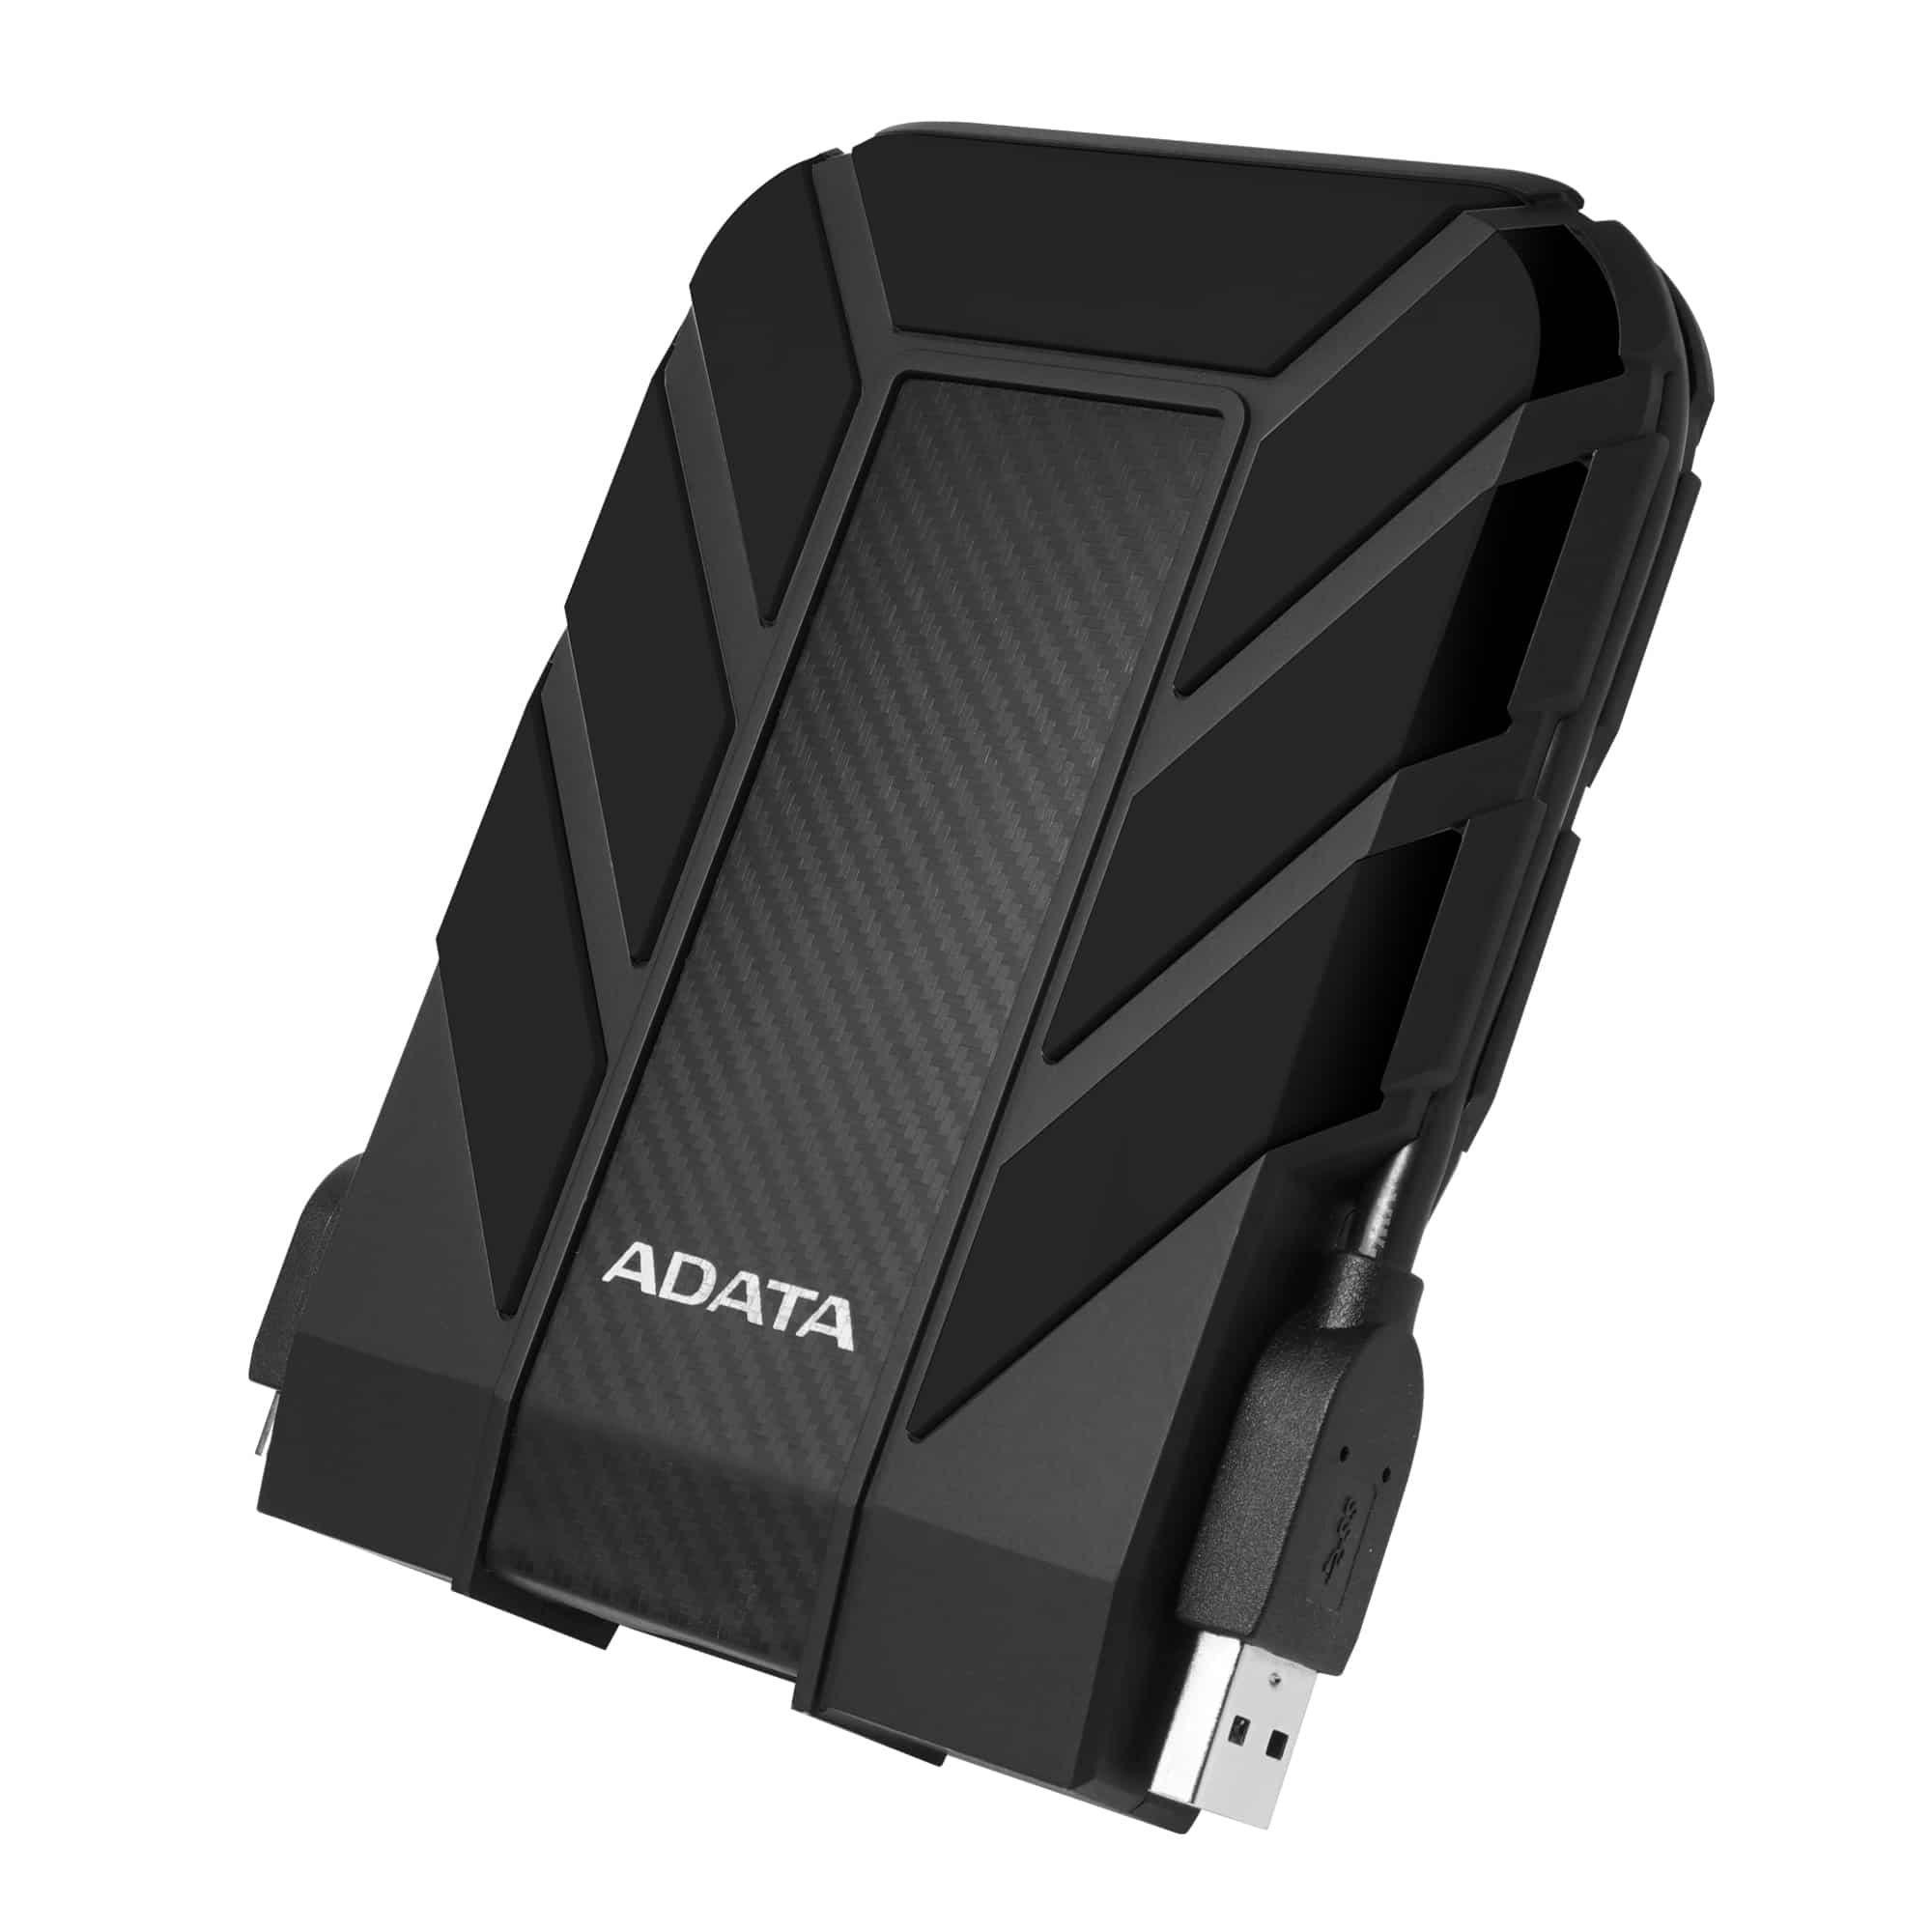 Duro Externo ADATA HD710 - 5 TB, USB 3.2 Gen1 (compatible Con Las Versiones Anteriores USB 2.0), 2.5 Pulgadas,